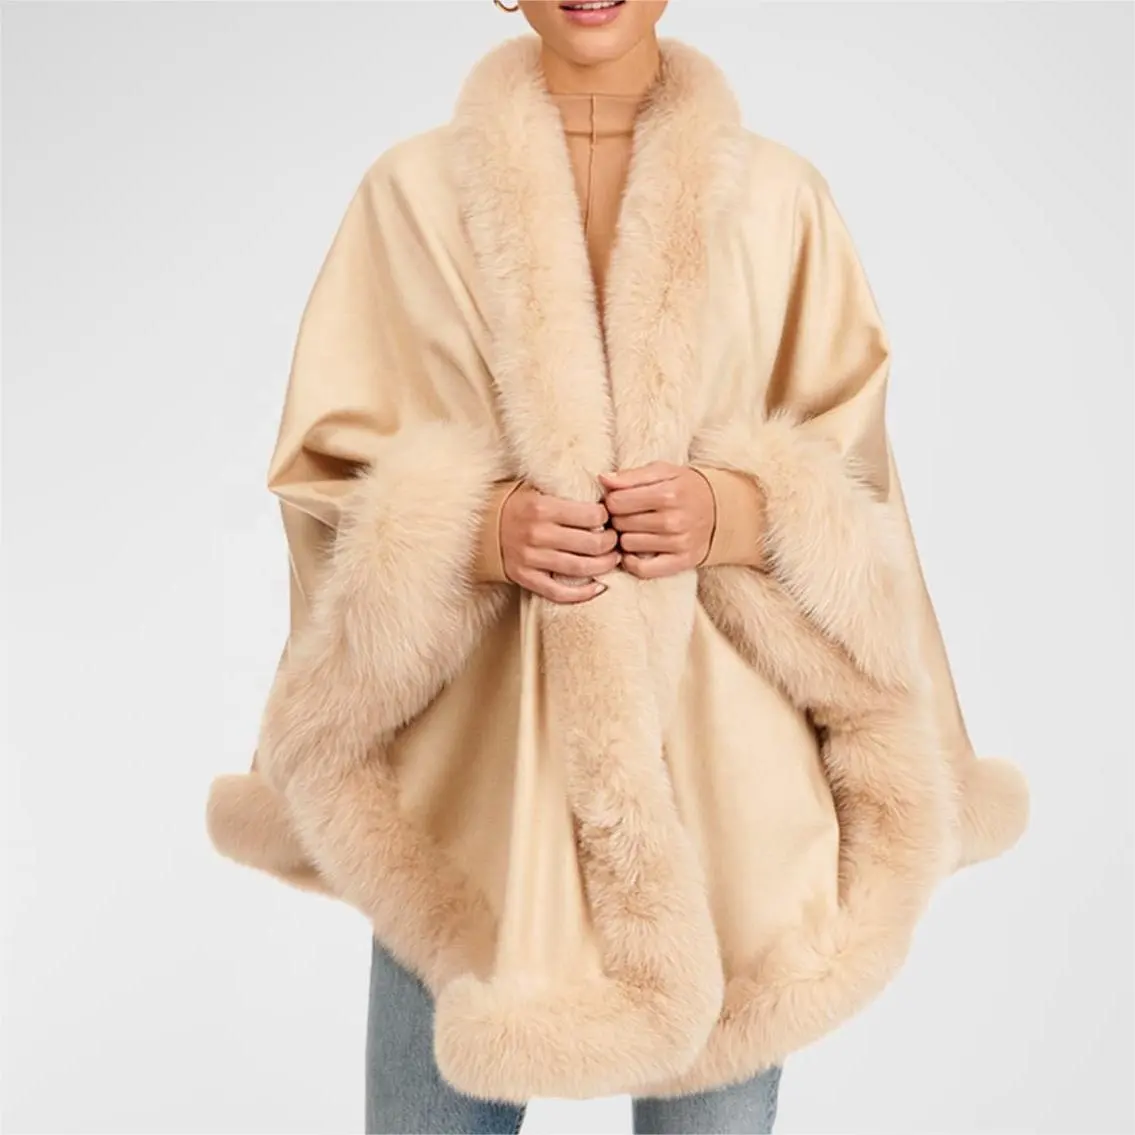 Оптовая продажа, женская зимняя накидка из высококачественной шерсти лисы на заказ, кашемировая накидка большого размера с отделкой из натурального меха, женские меховые шали